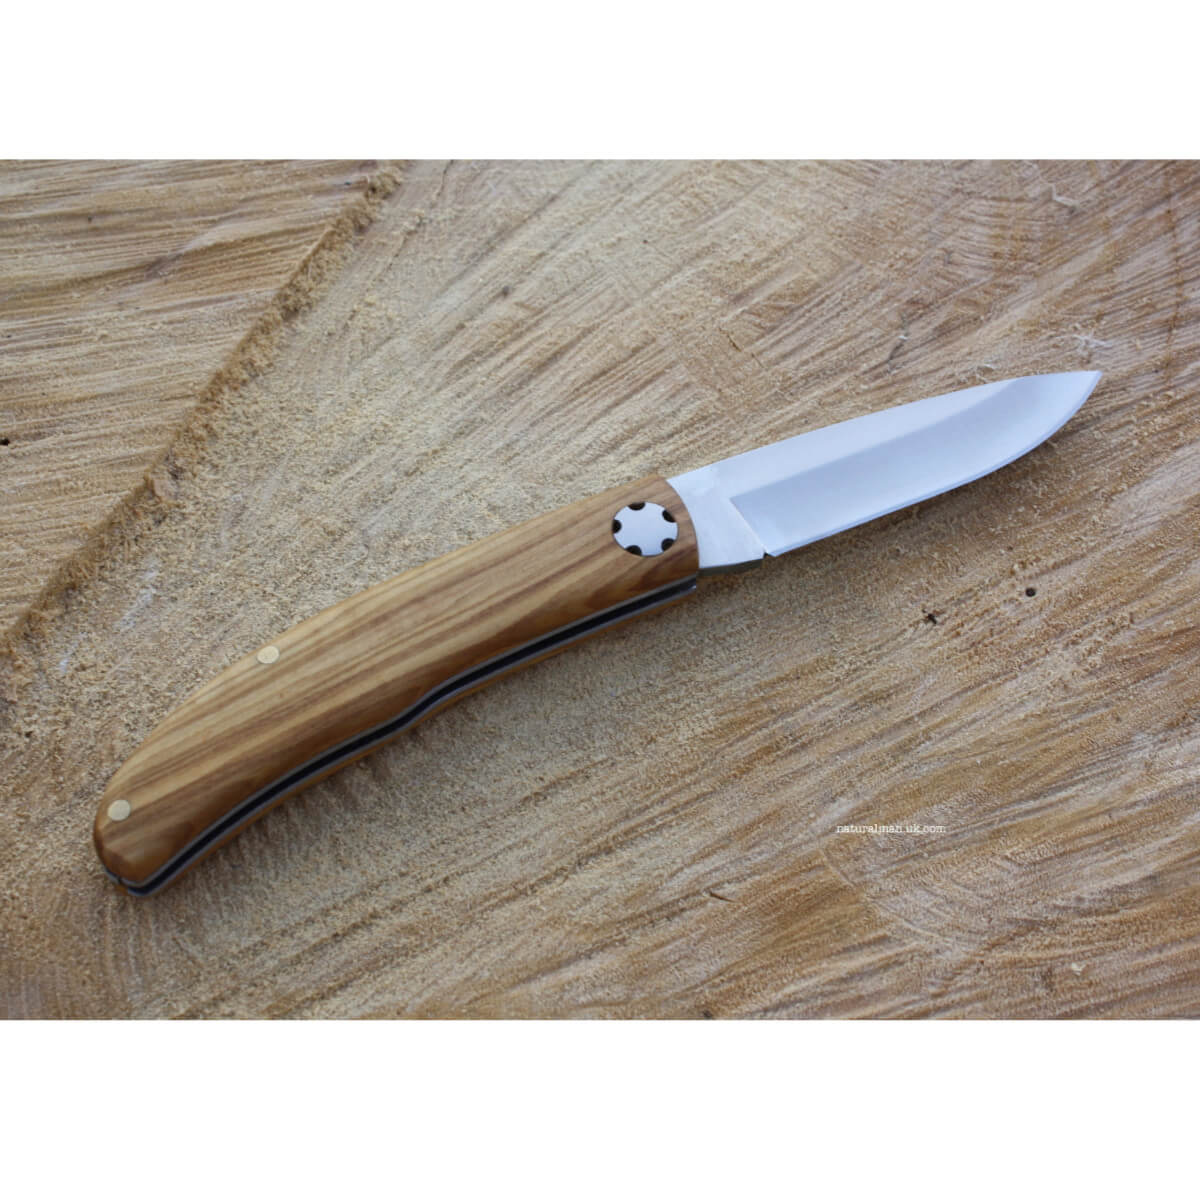 UK Legal Carry Pocket Knife - Olive Wood